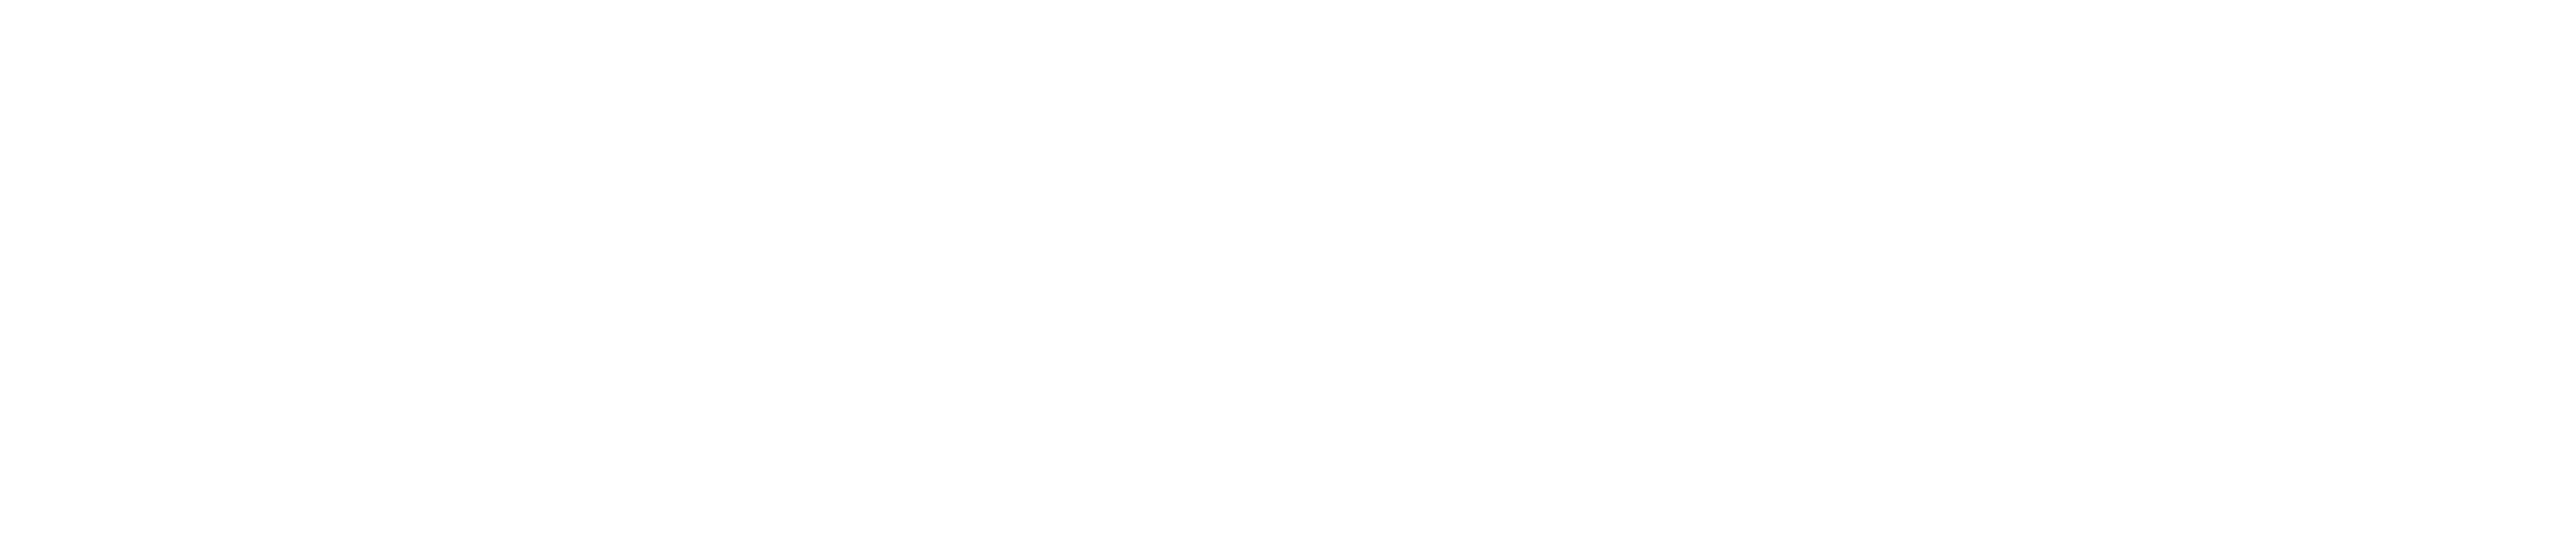 Logo Enel Energia 60 Years